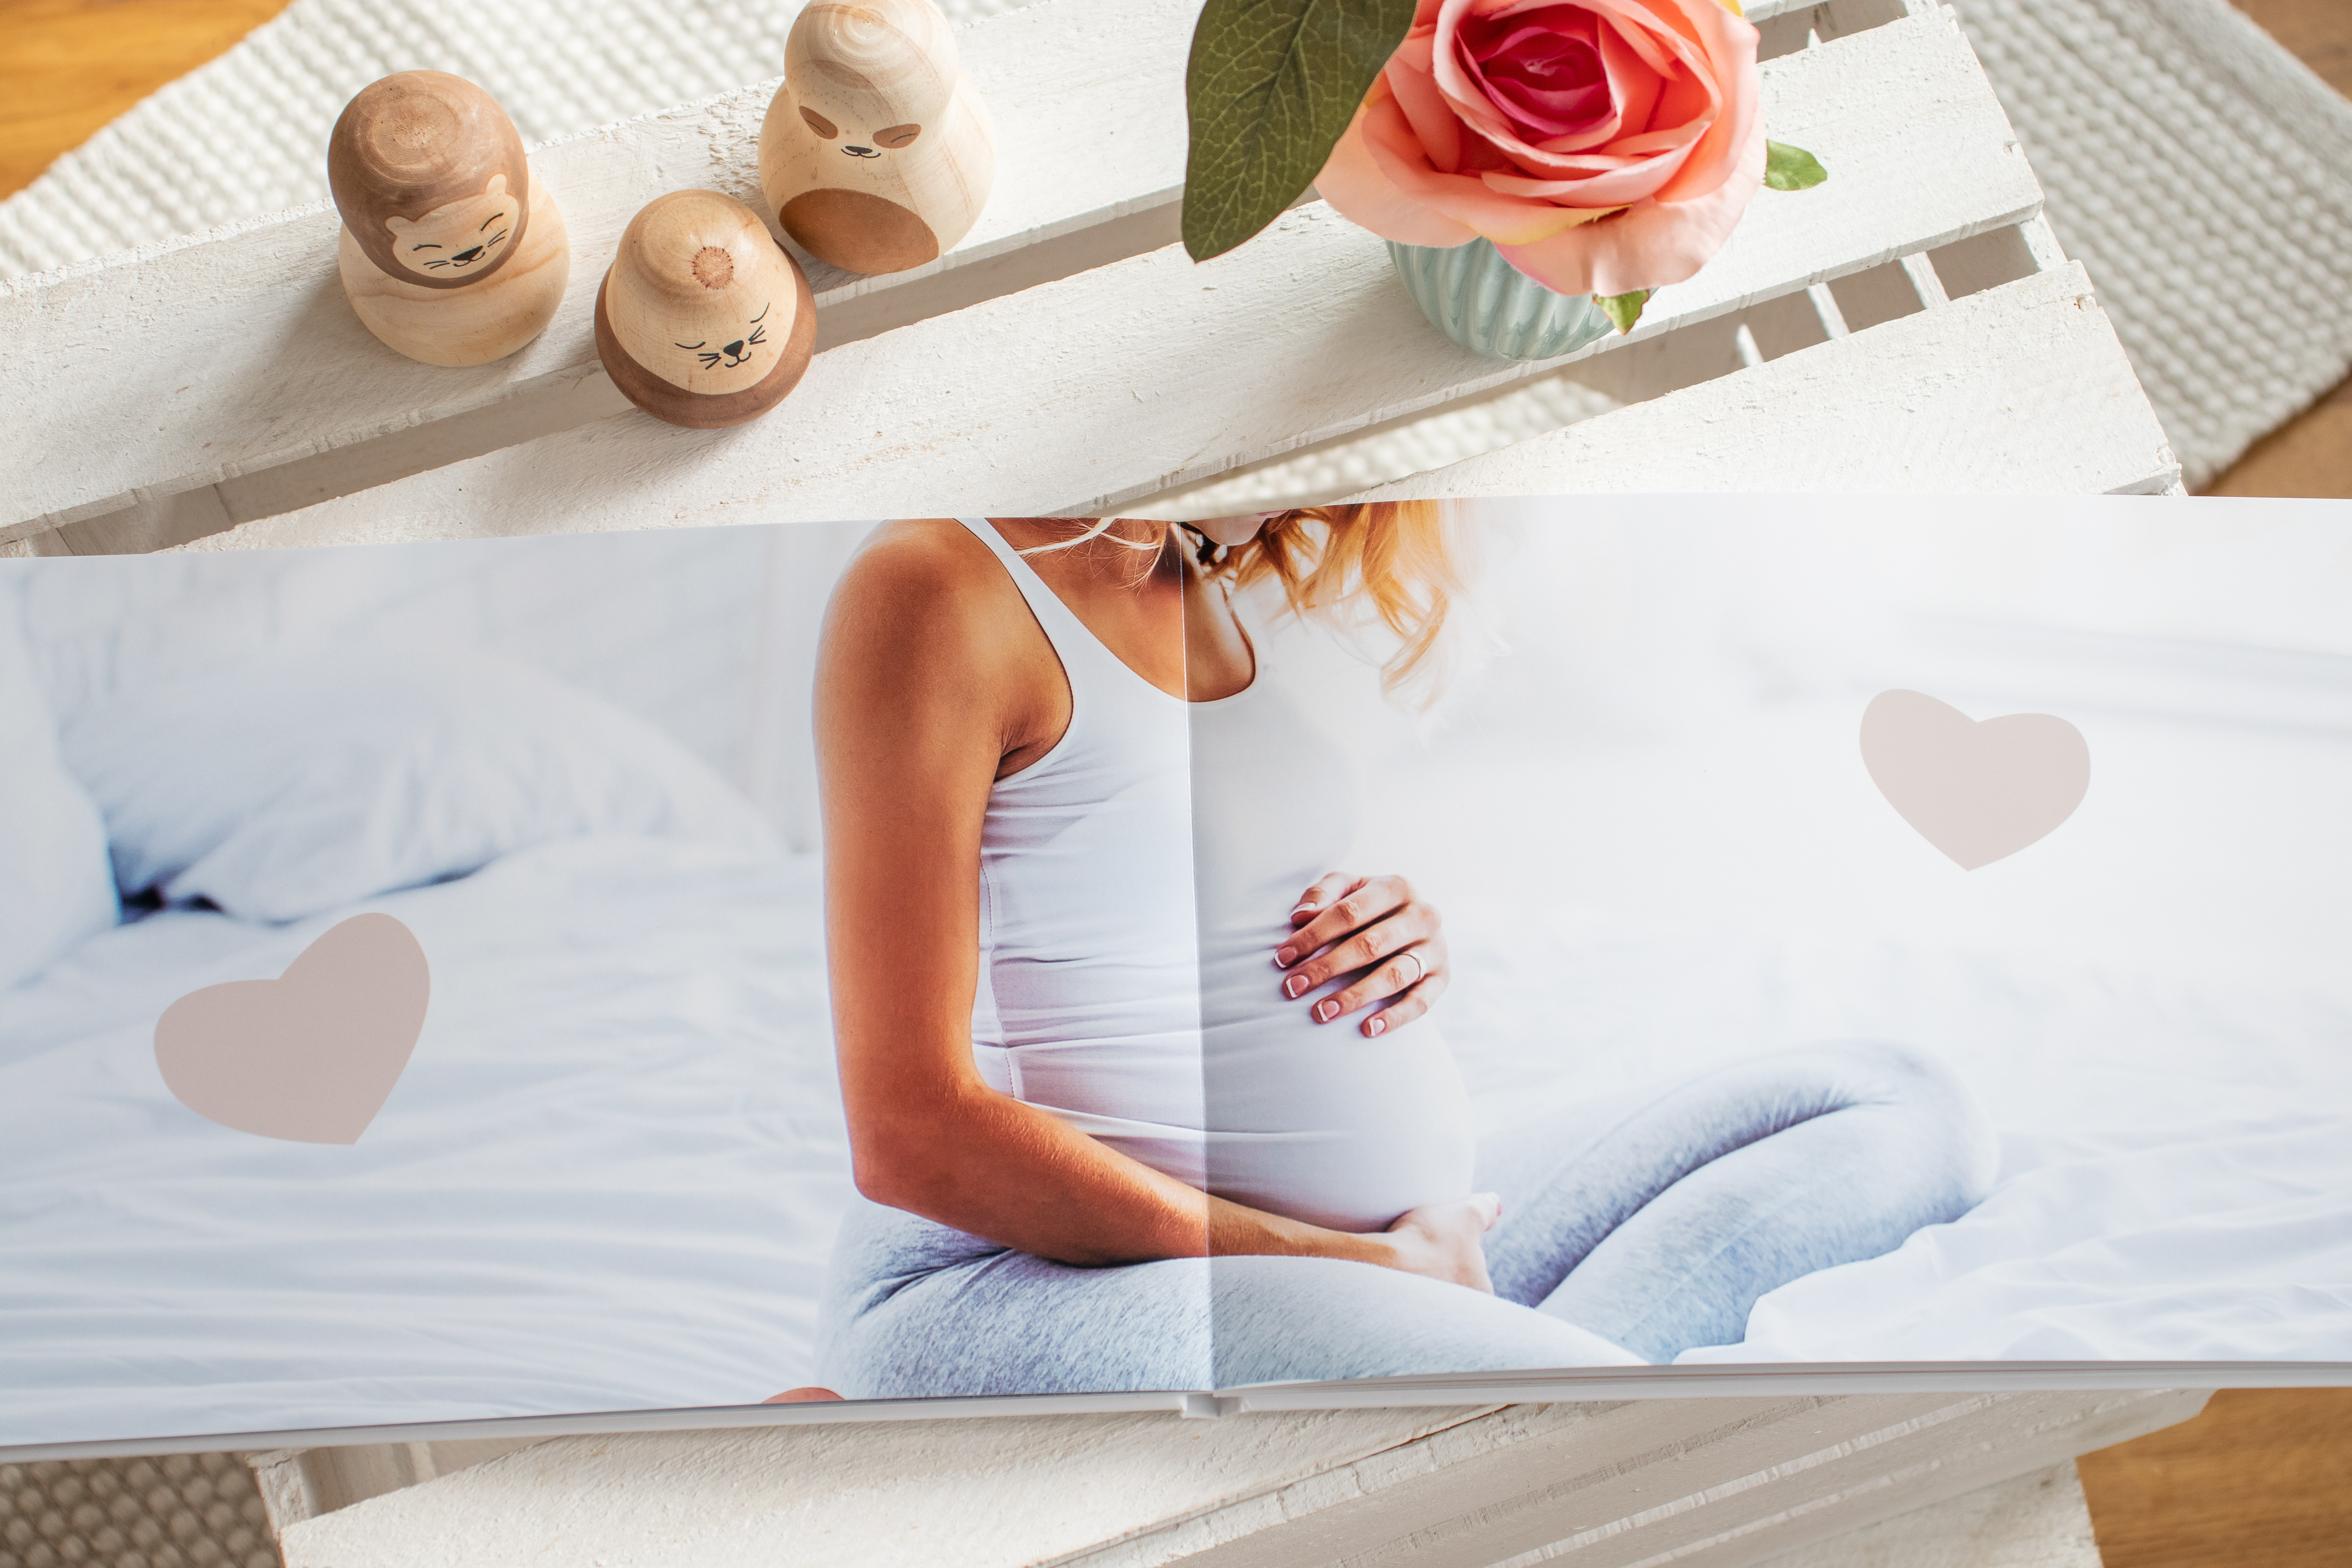 Fotobuch zur Schwangerschaft: Besondere Fotos auf zwei Seiten im Fotobuch festhalten